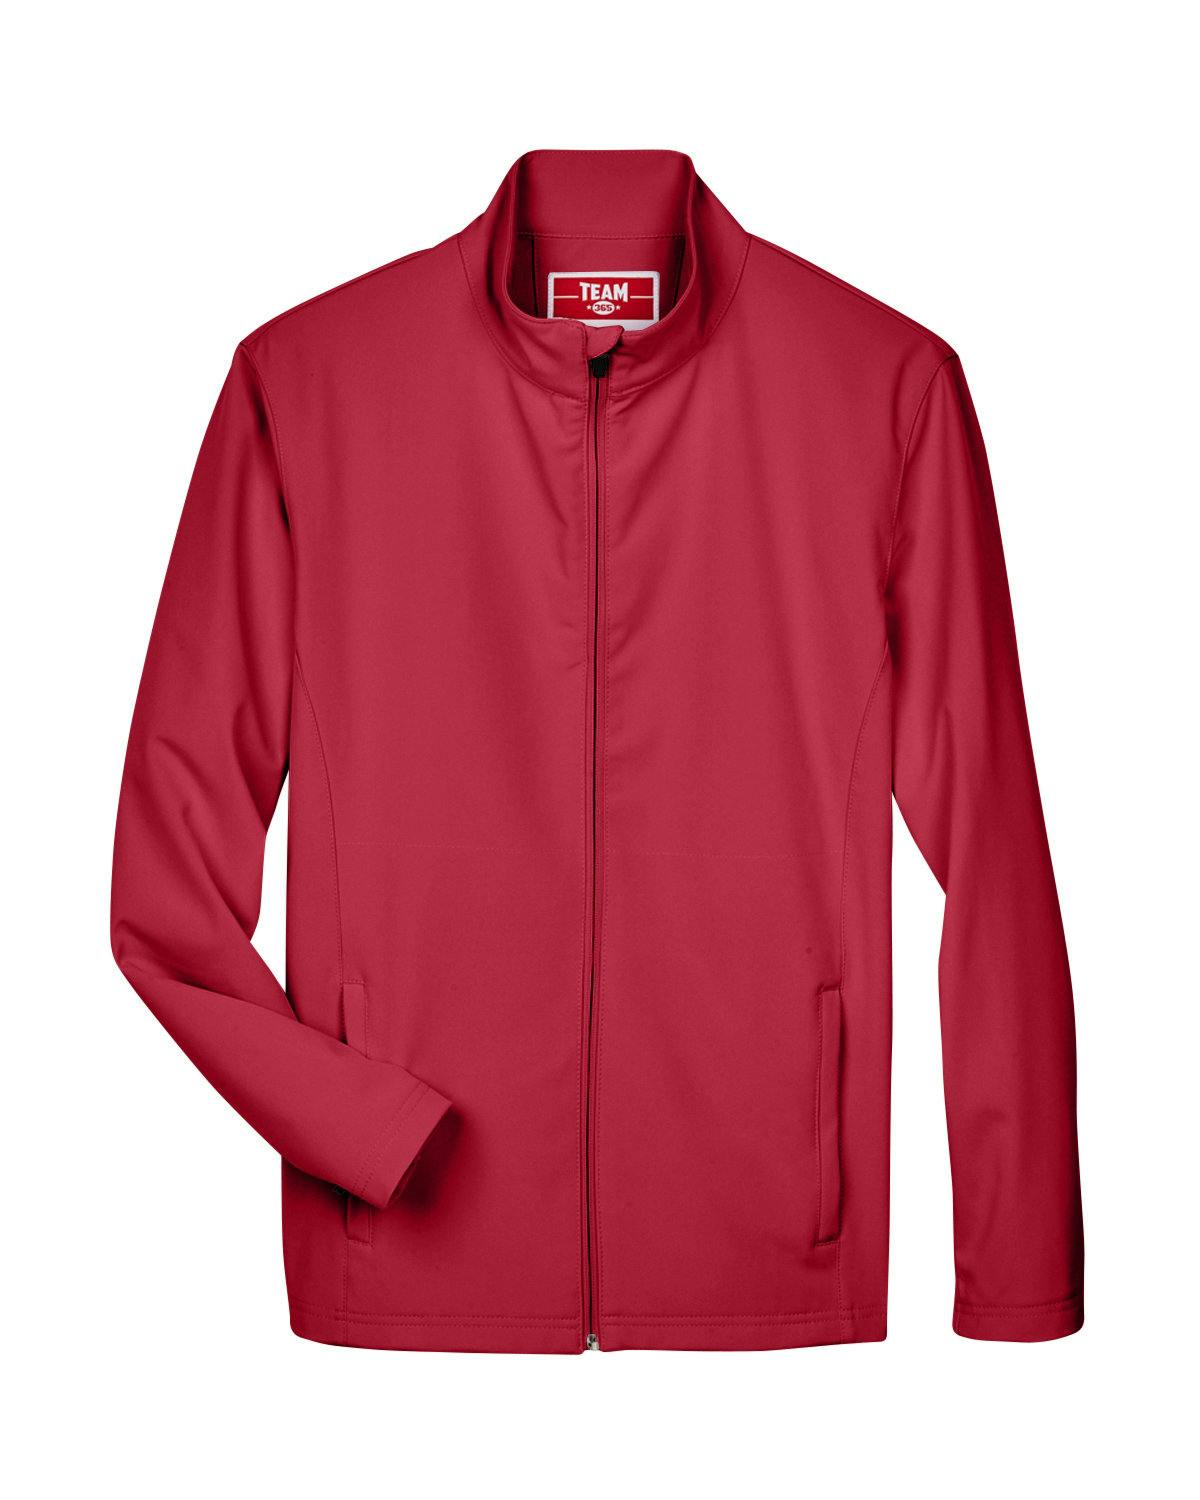 Image for Men's Leader Soft Shell Jacket